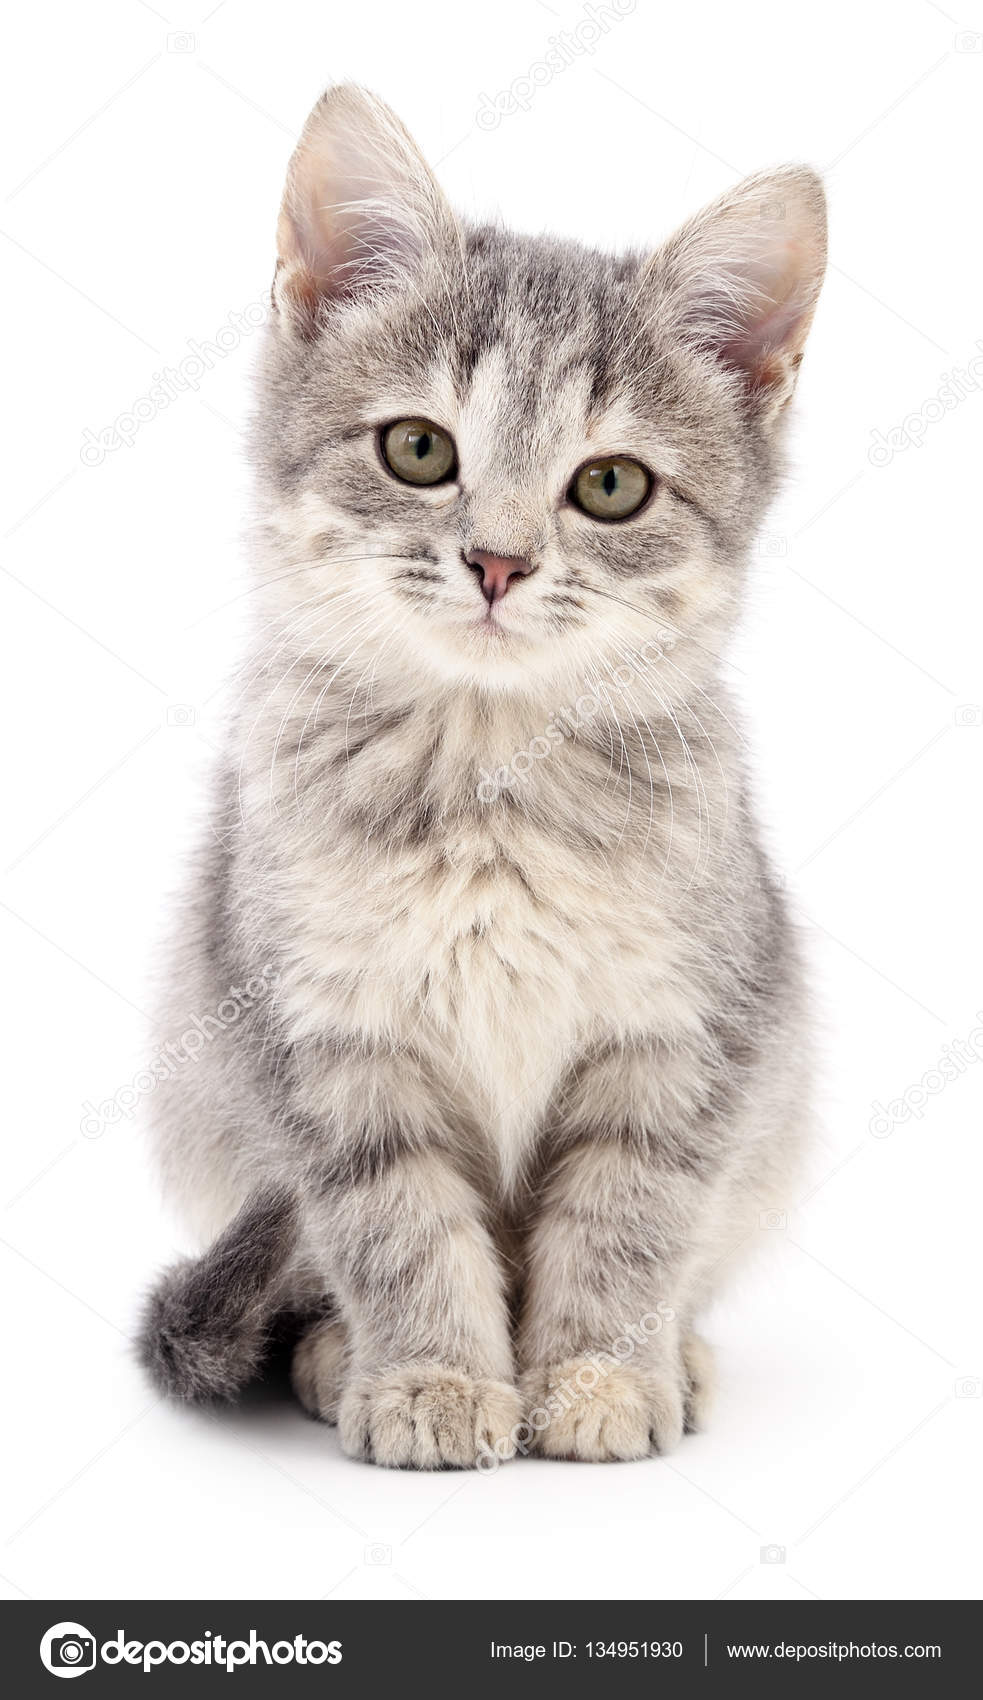 Duplicatie Wanorde Bezwaar Kleine grijze kitten. ⬇ Stockfoto, rechtenvrije foto door © Olhastock  #134951930